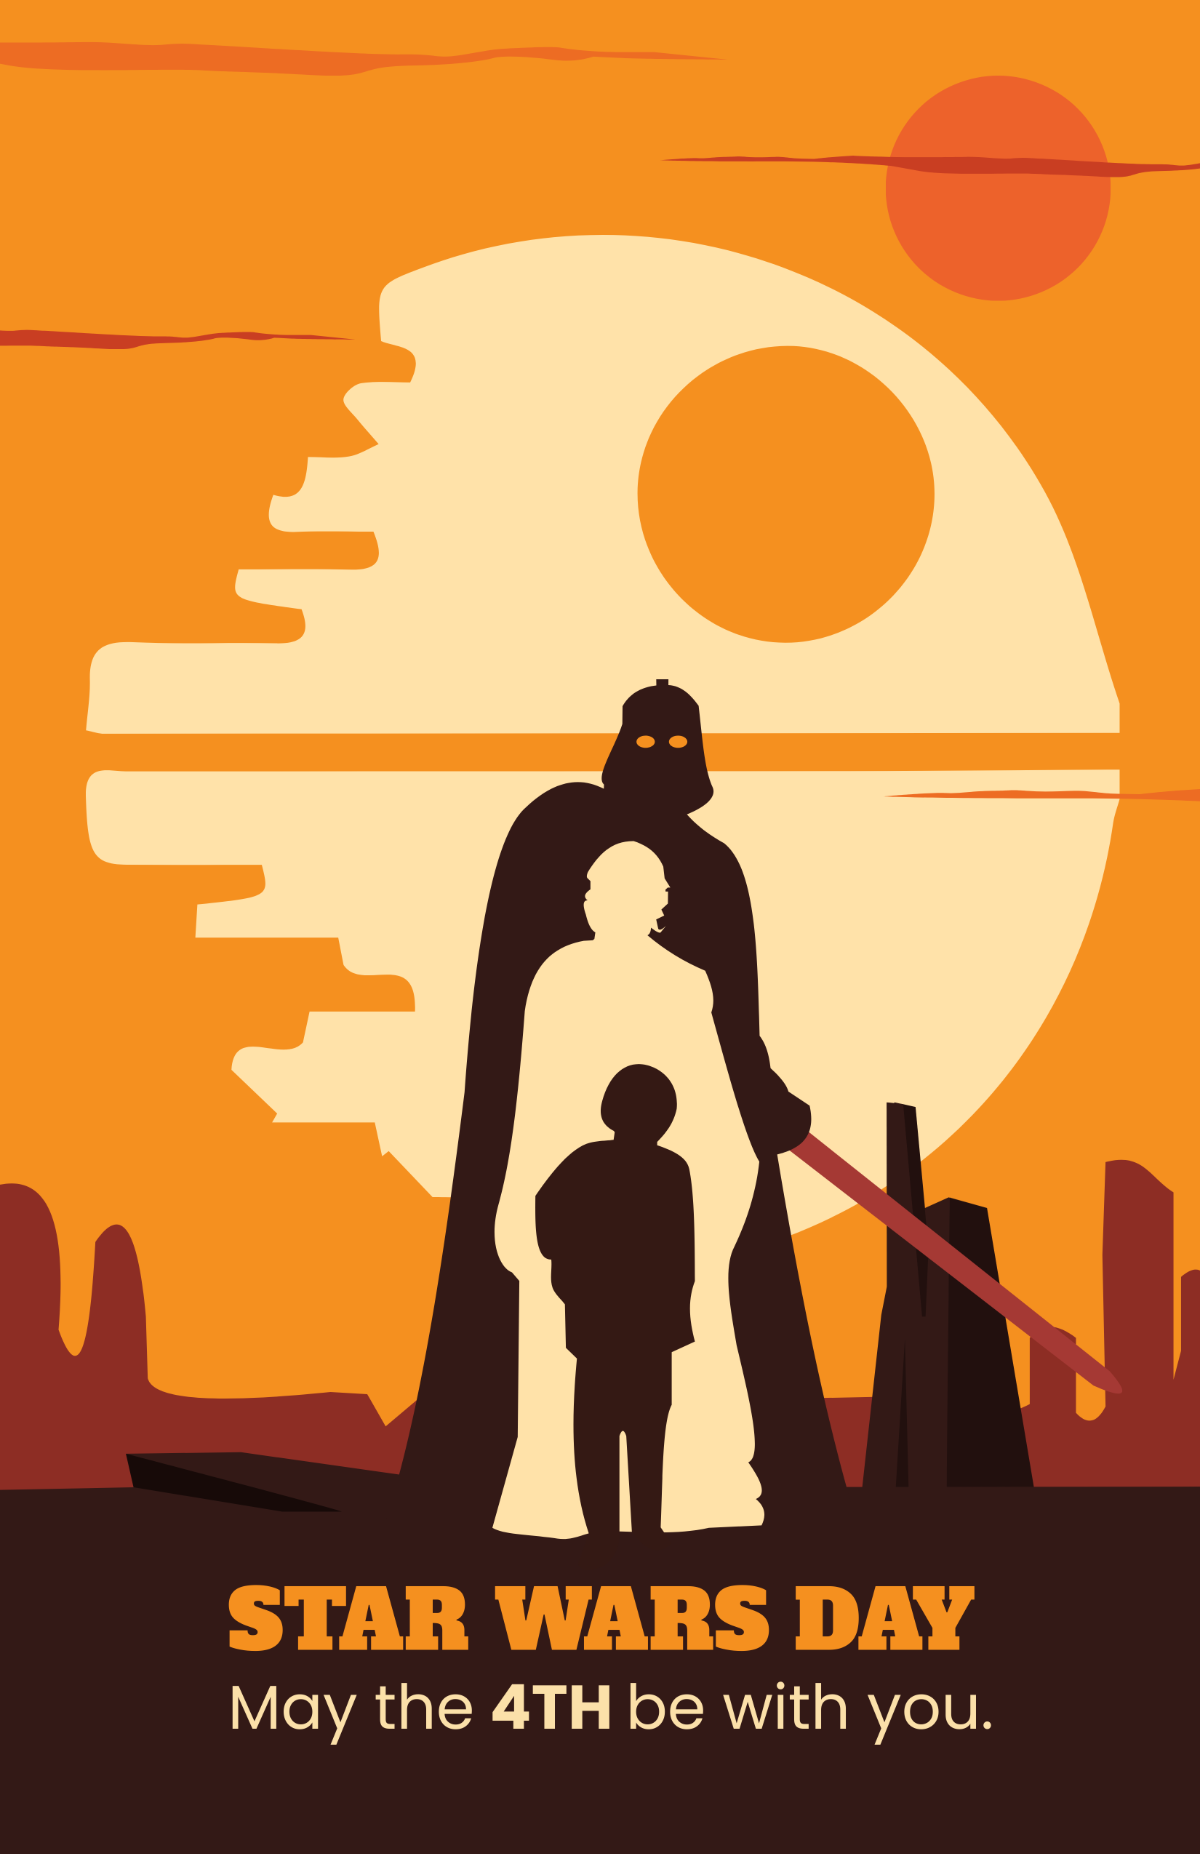 Star Wars Art Poster Template